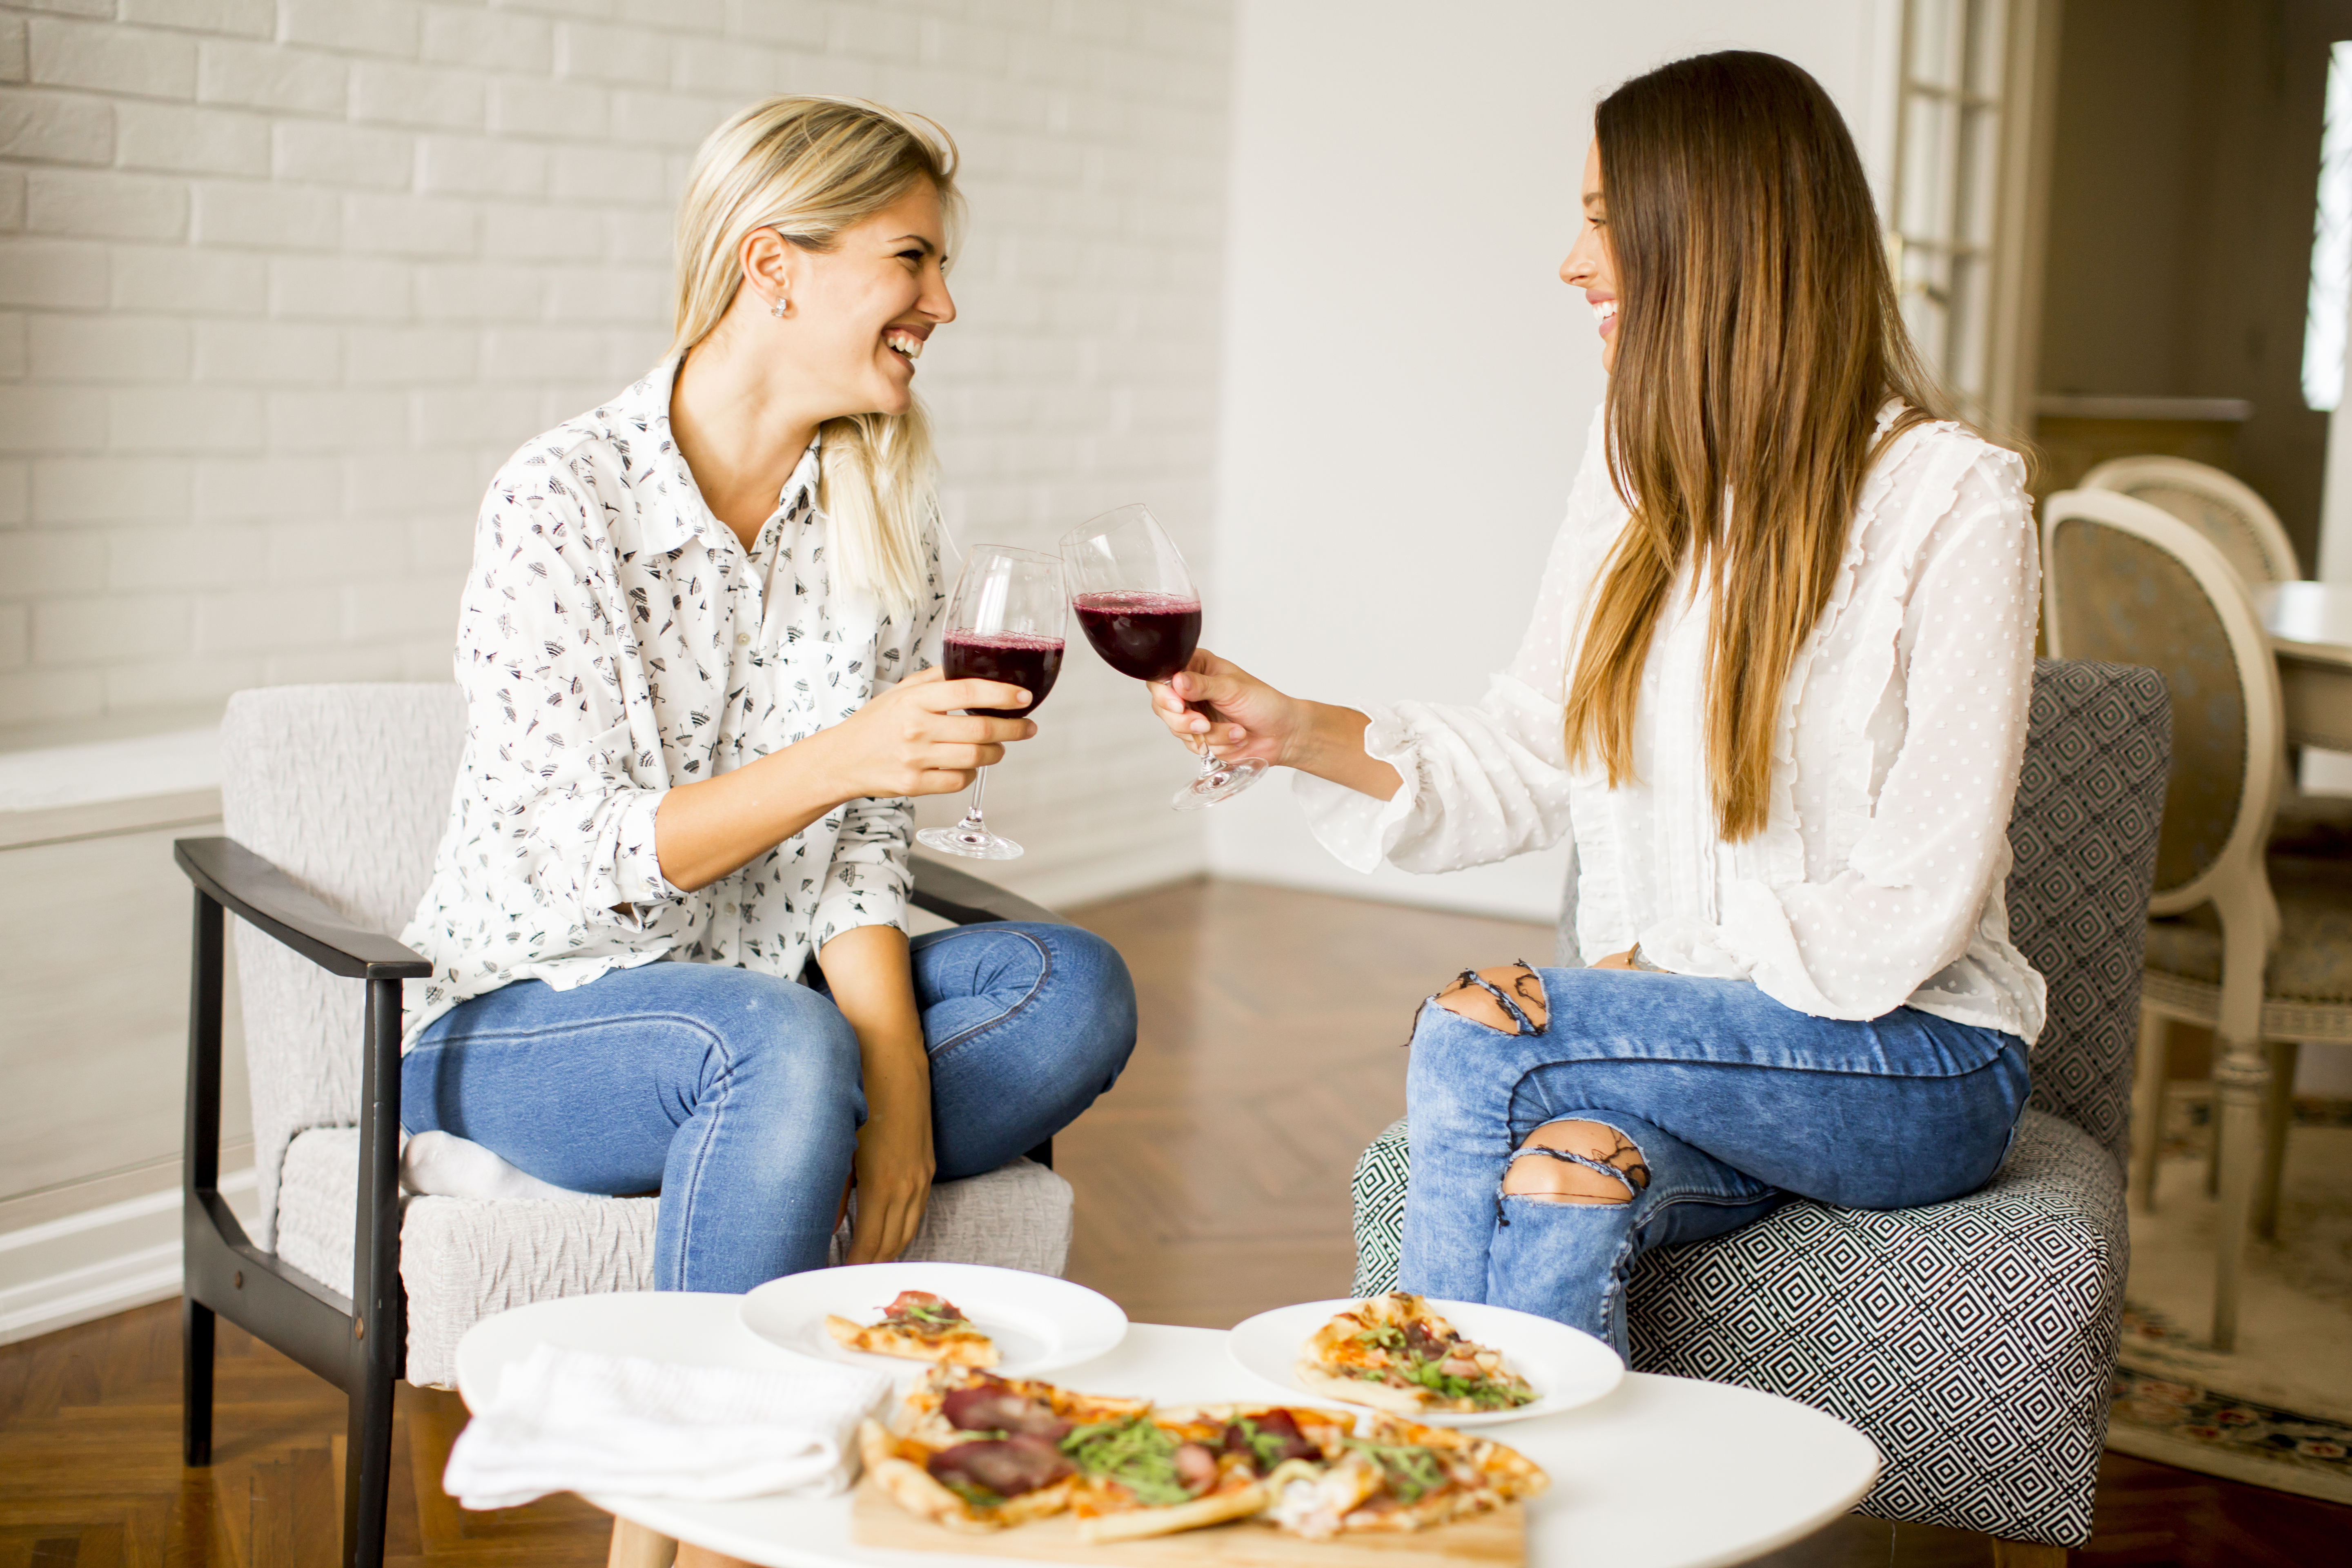 Hübsche junge Frauen essen Pizza und trinken Rotwein | Quelle: Getty Images